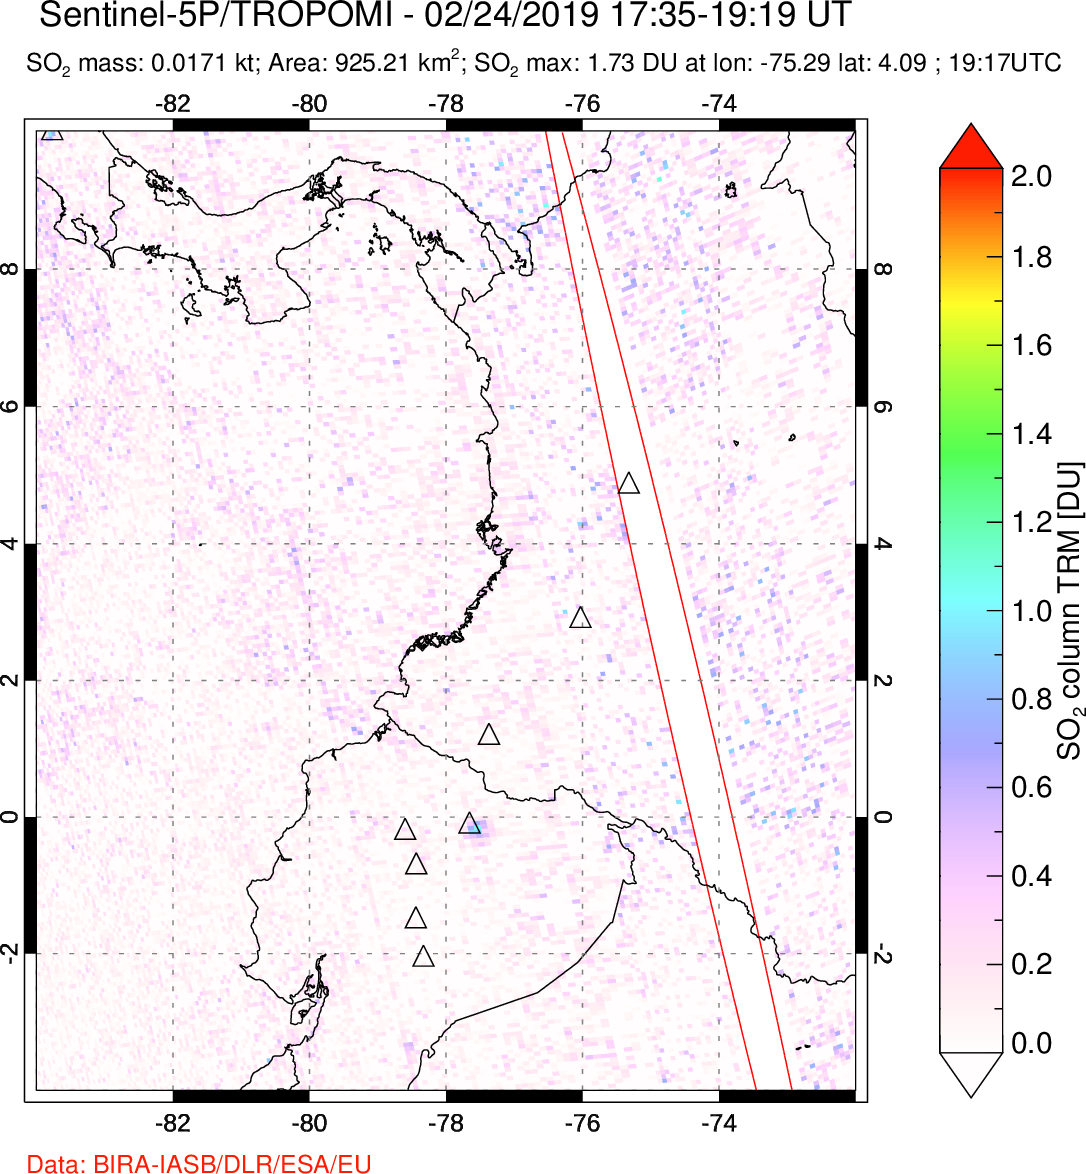 A sulfur dioxide image over Ecuador on Feb 24, 2019.